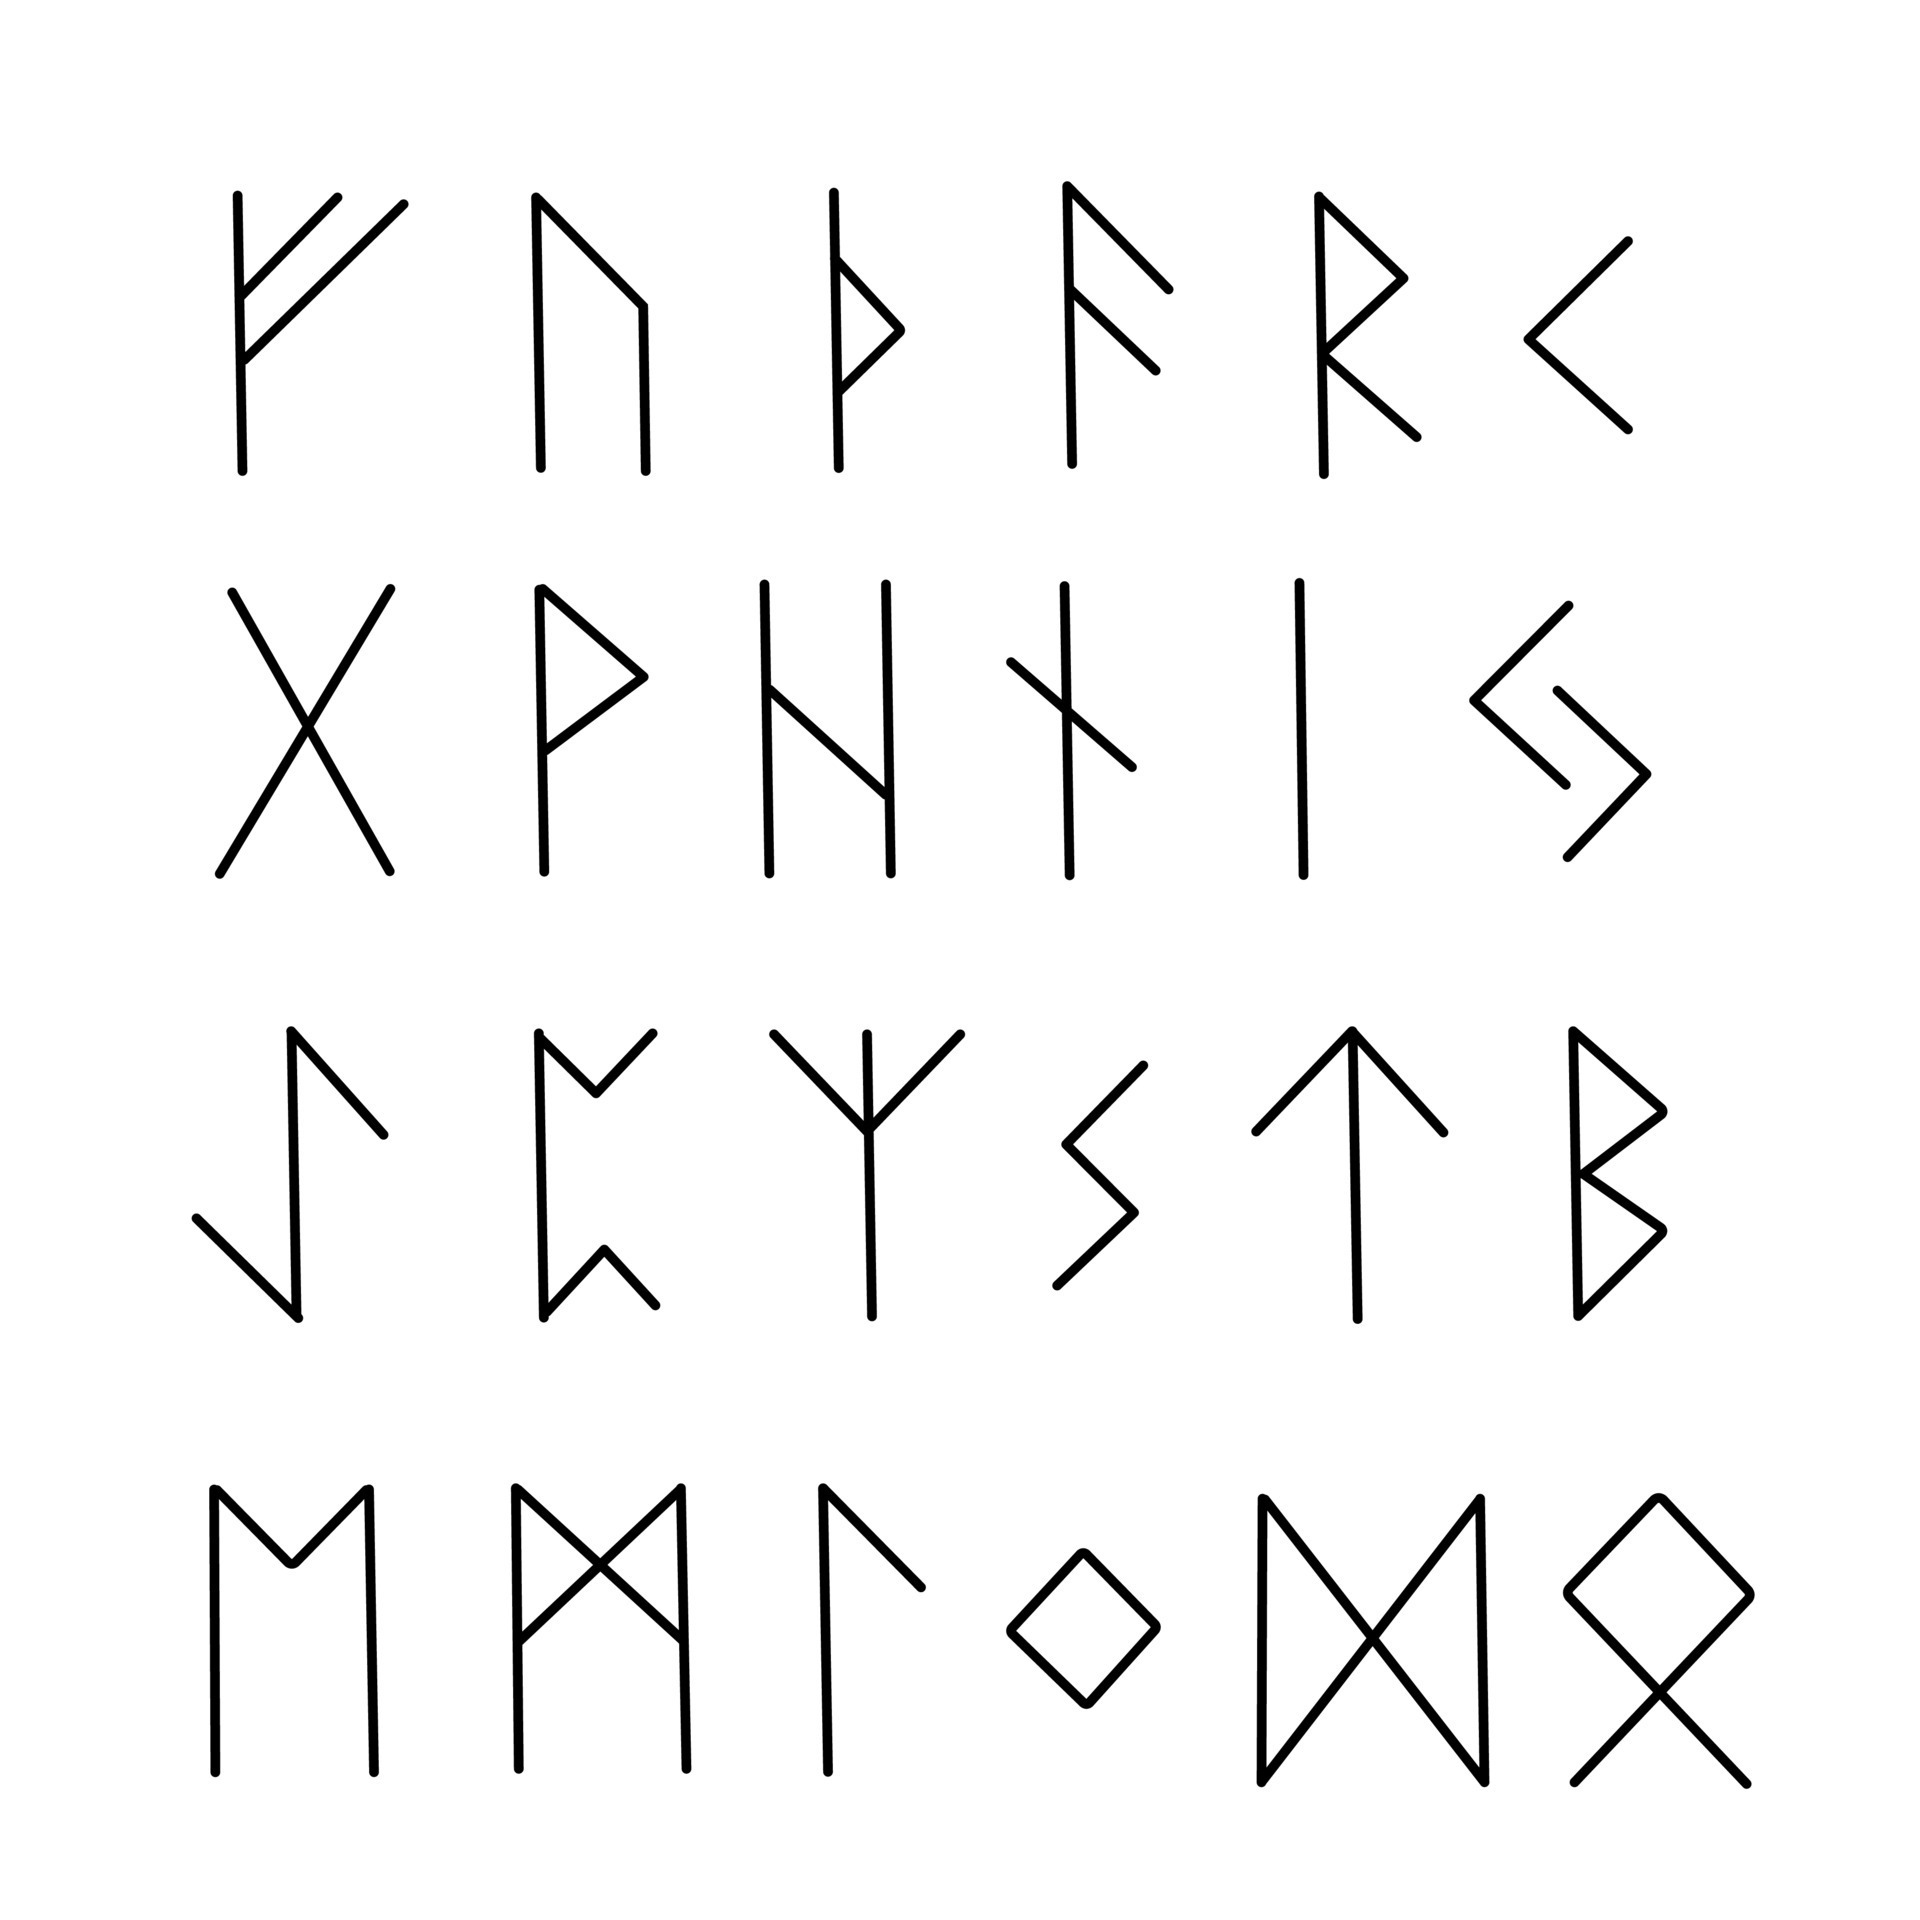 Alfabeto de runas vikingas dibujadas a mano